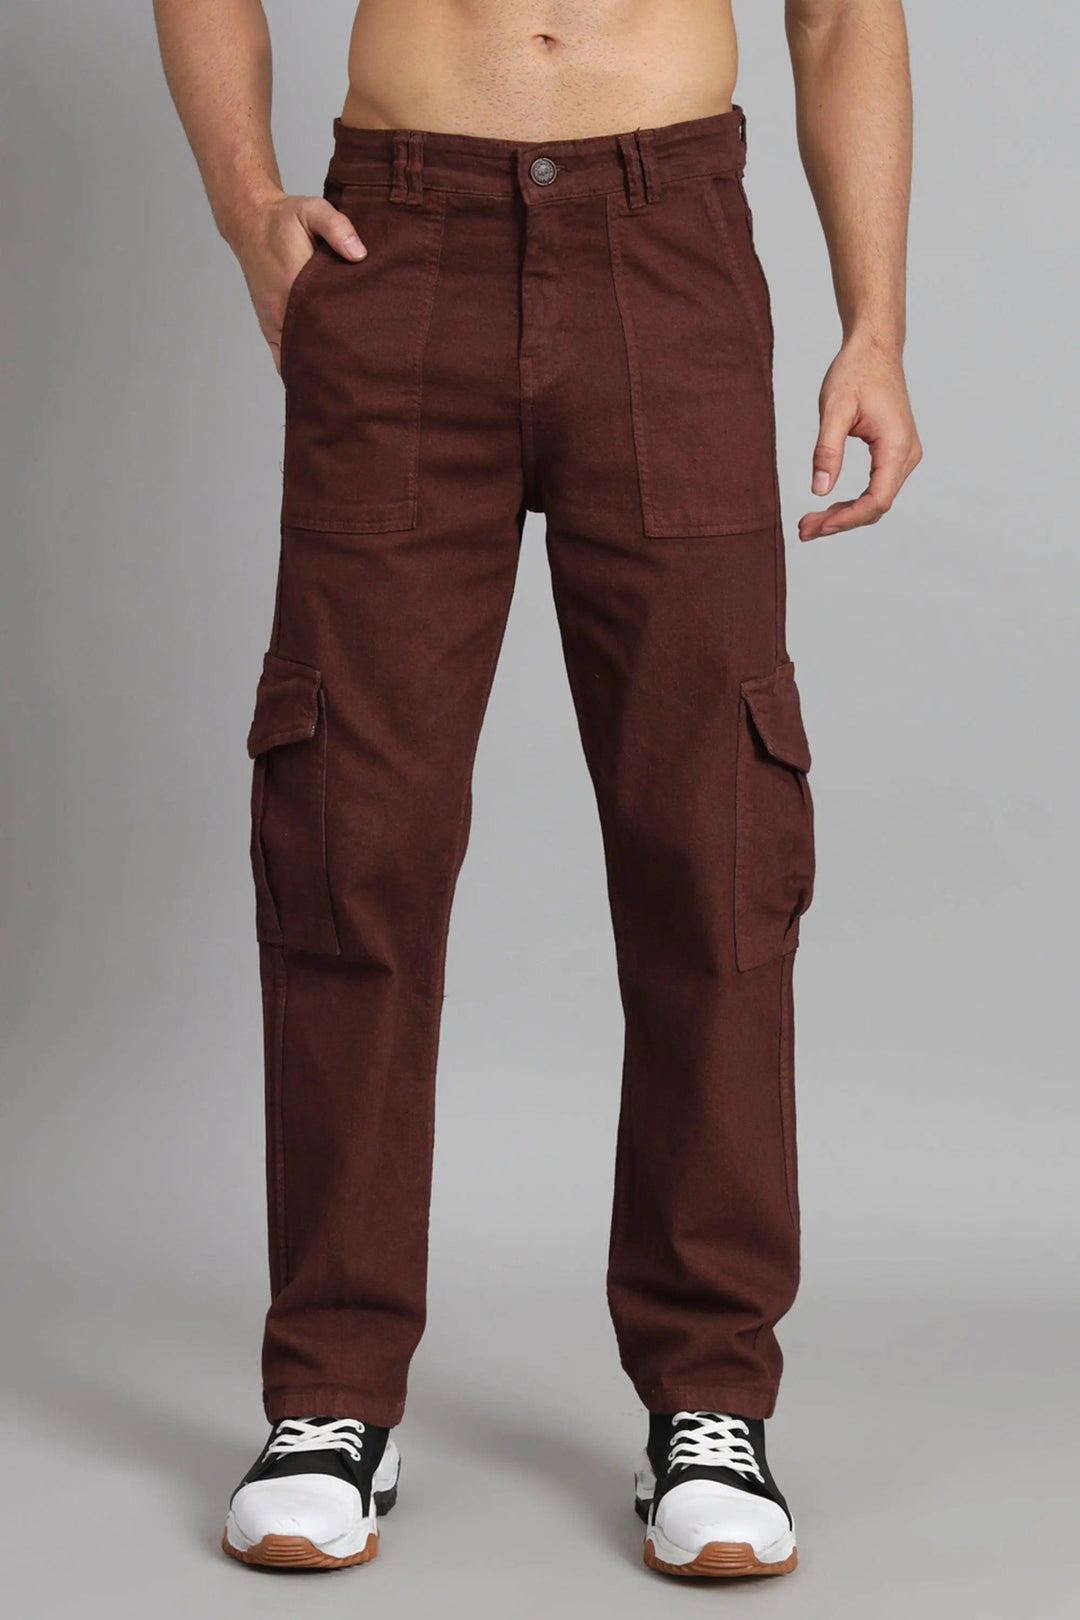 Regular Fit Brown Denim Cargo & Jacket Co-ord Set for Men - Peplos Jeans 